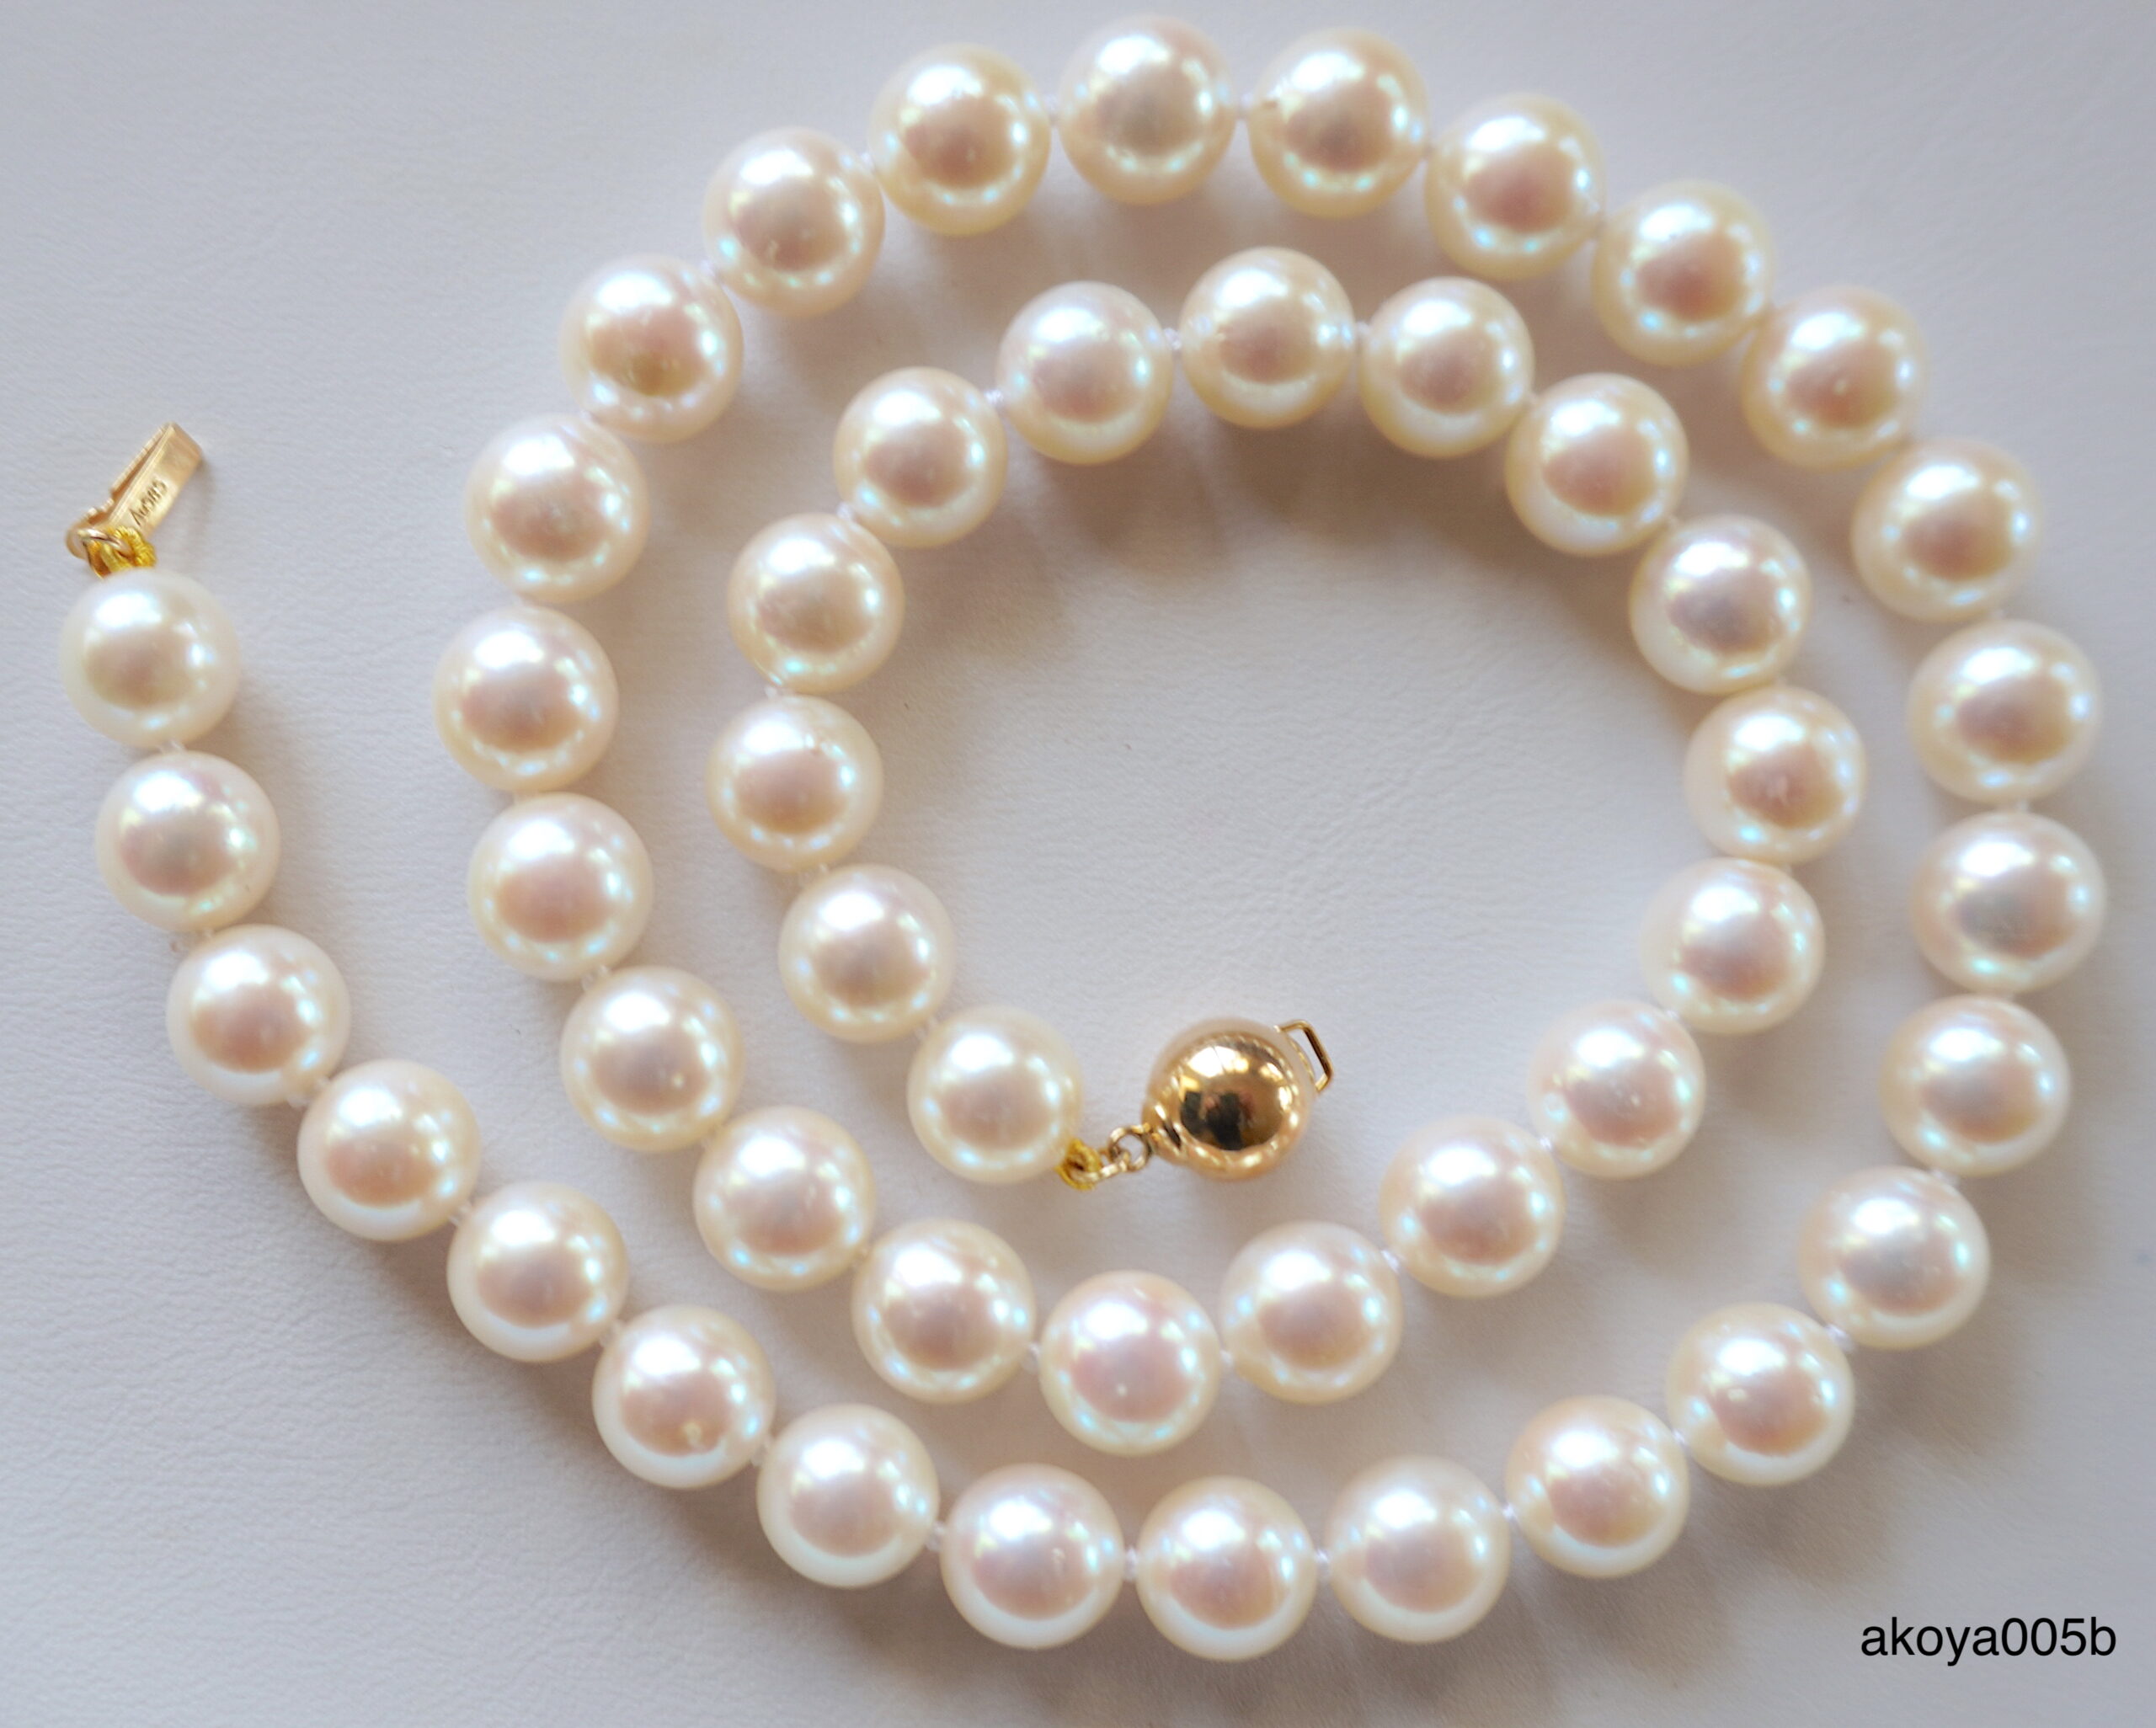 Buy 18K Yellow Gold & Natural Akoya Pearl Lace Necklace, White Pink Pearl  Lace Necklace, Gift for Her, Seawater Pearl Necklace, Lace Necklace Online  in India - Etsy